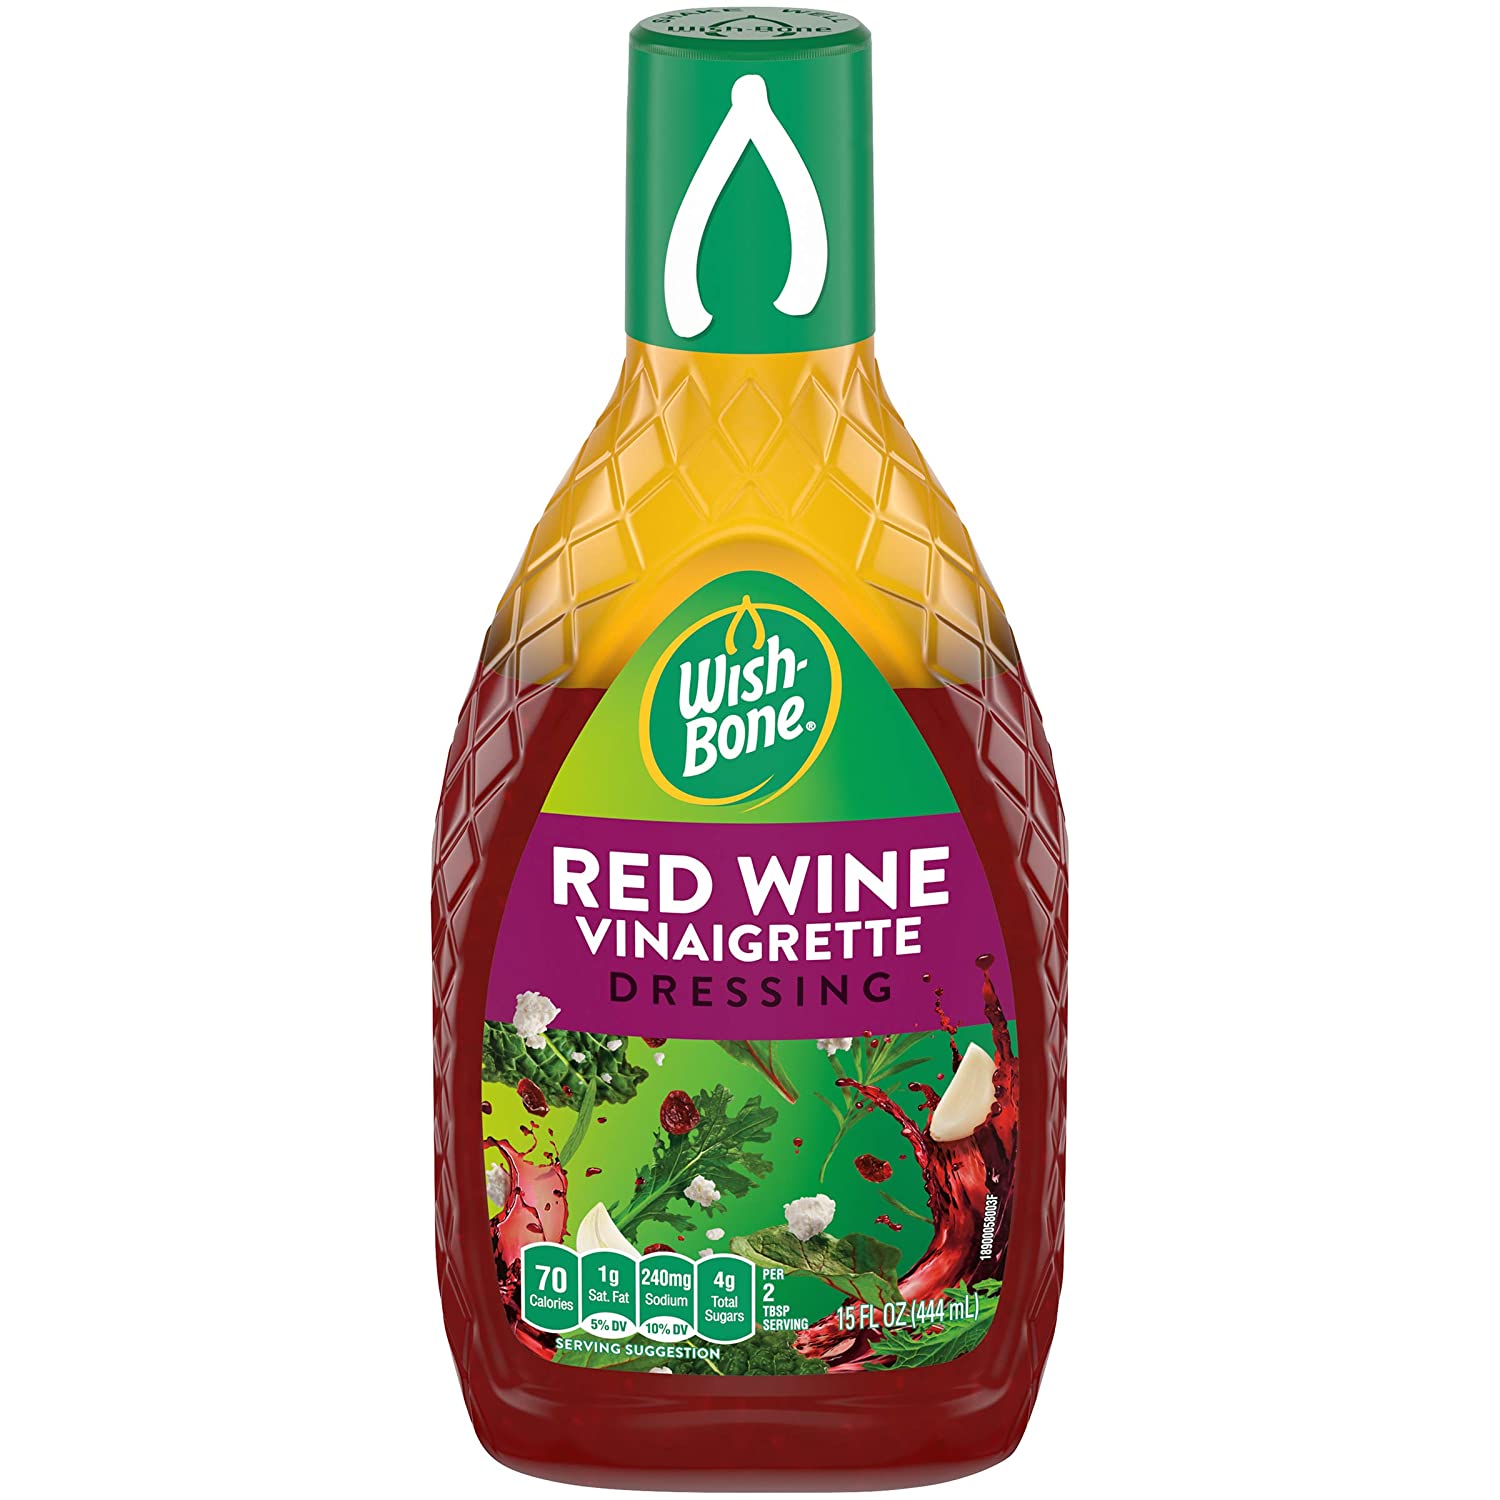 15-Oz Wish-Bone Red Wine Vinaigrette $1.70 & More w/ S&S + Free S&H w/ Prime or $25+